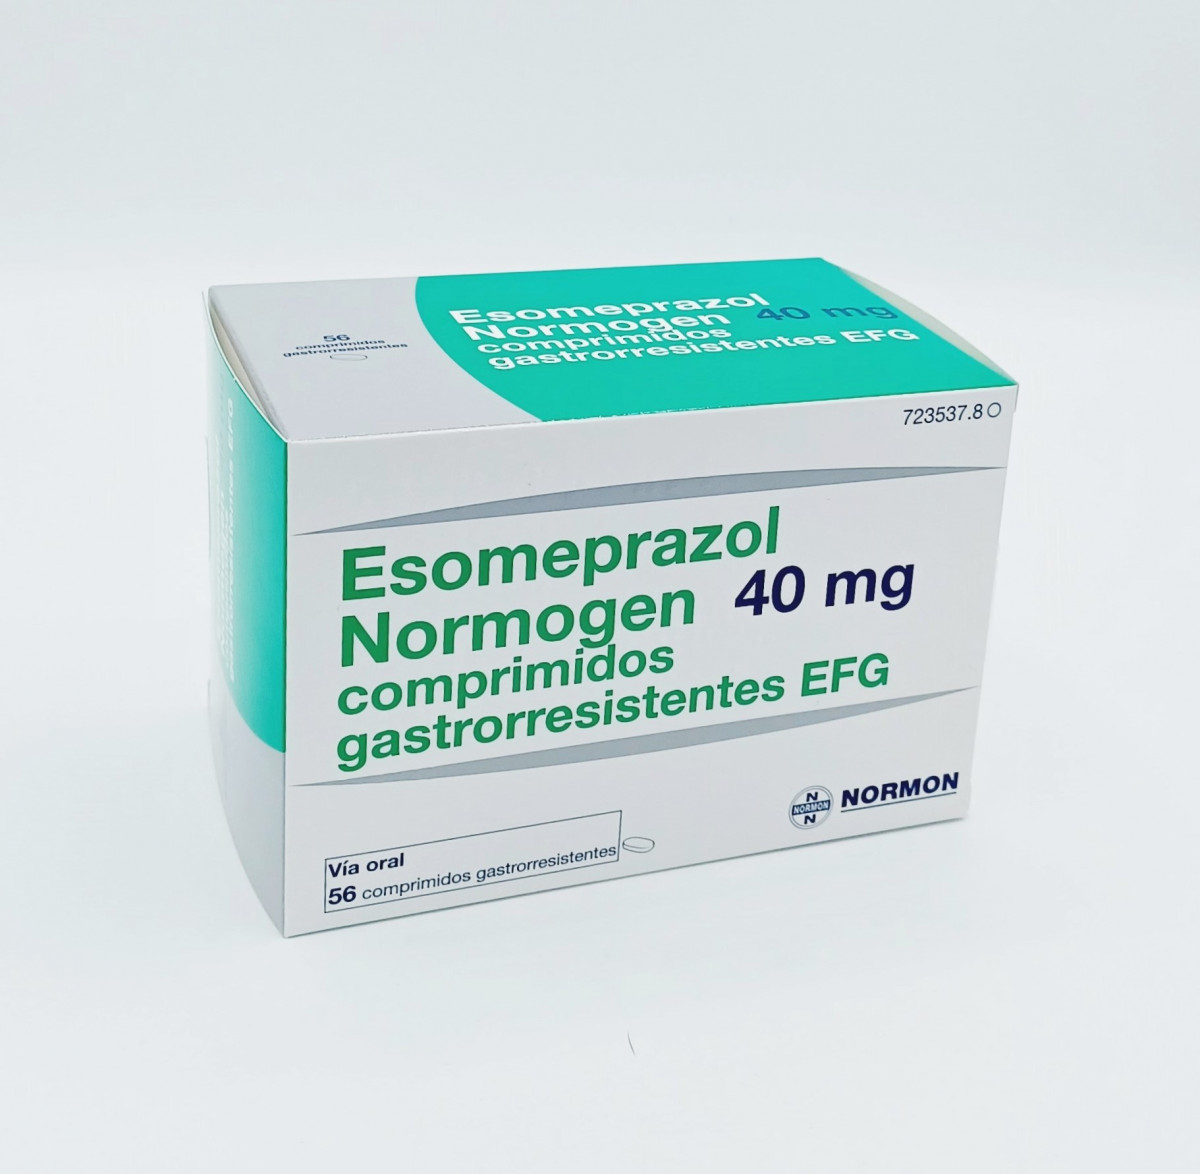 ESOMEPRAZOL NORMOGEN 40 MG COMPRIMIDOS GASTRORRESISTENTES EFG 14 comprimidos (Blister OPA/Al/PE-Al/PE) fotografía del envase.